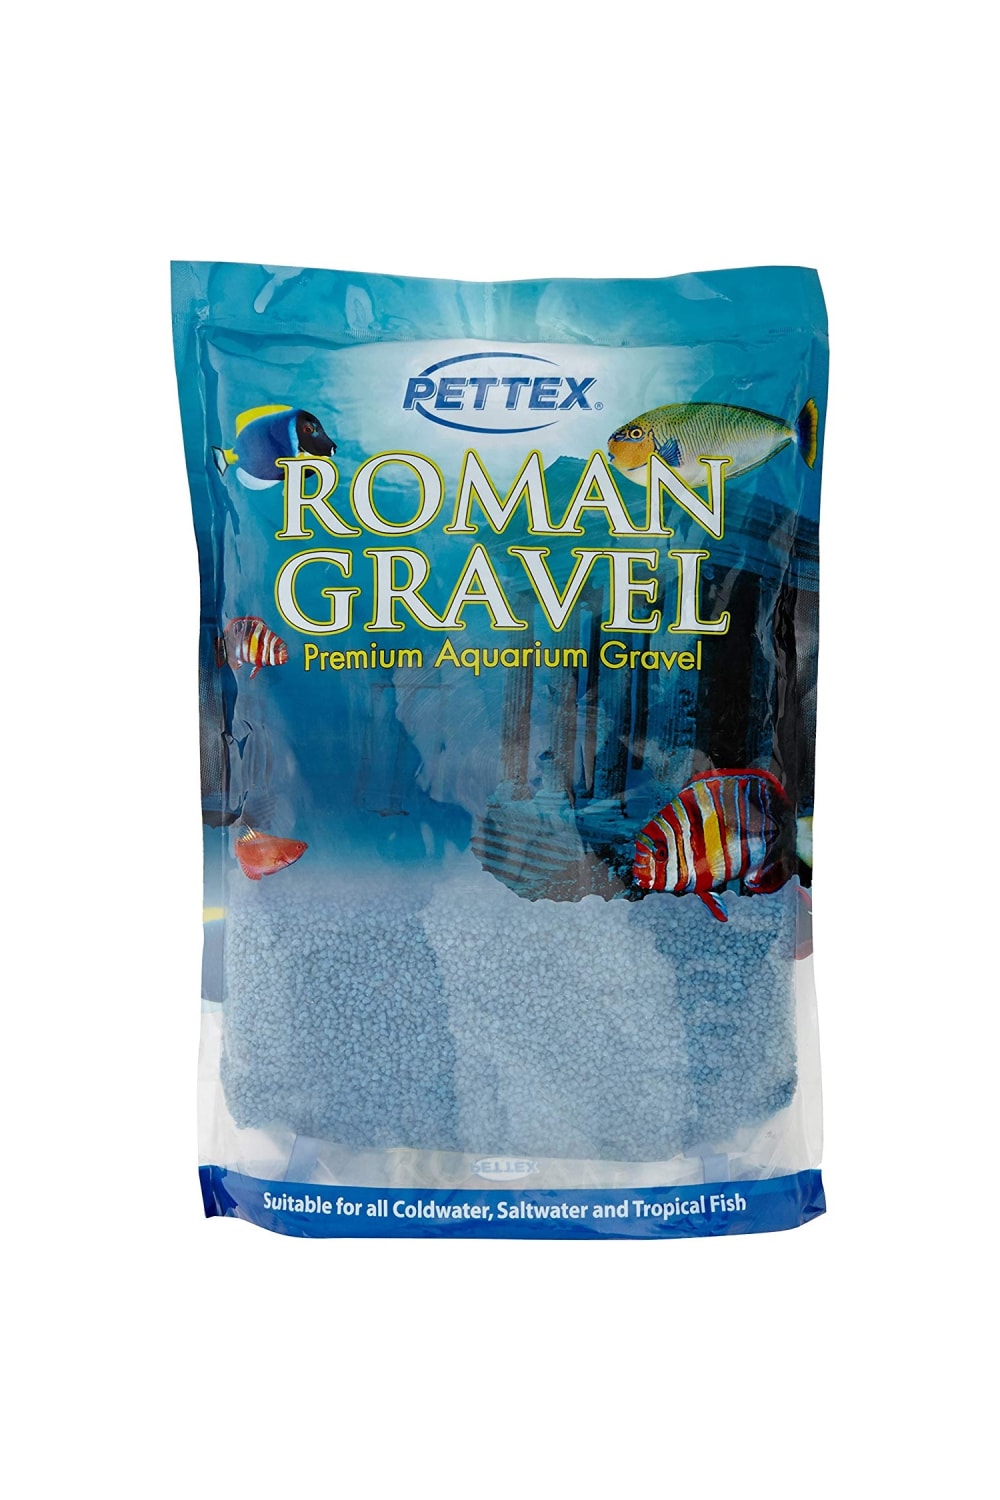 Pettex Roman Aquatic Gravel (Mediterranean Blue) (70.5oz)